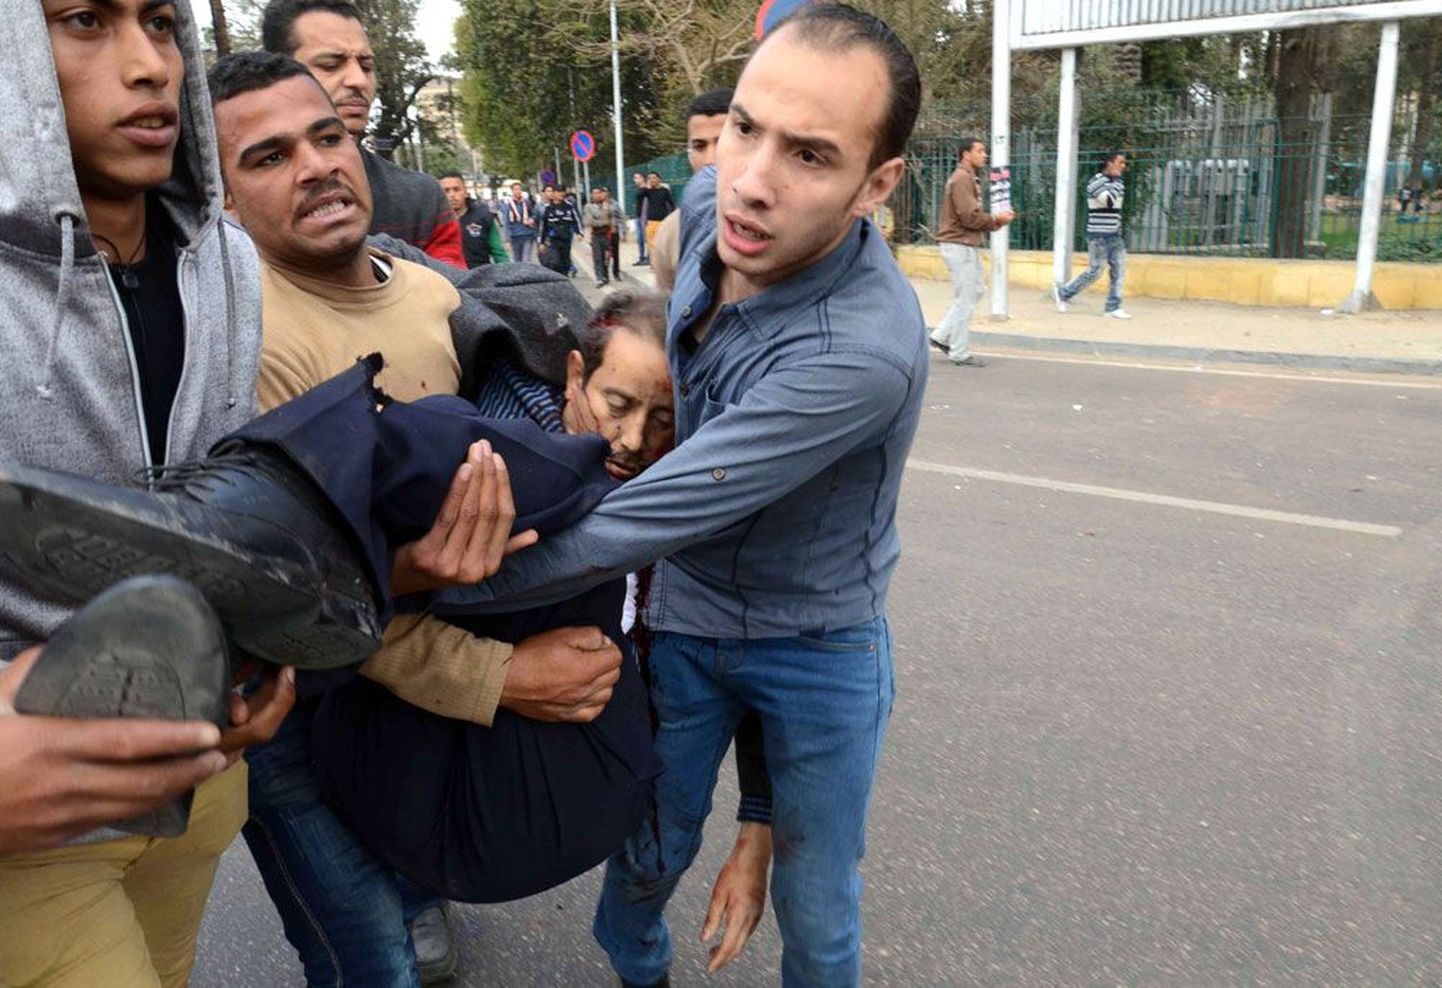 Eile toimus Egiptuse pealinna Kairo ülikoolilinnakus mitu pommiplahvatust. Ühes plahvatuses hukkus kõrge politseiametnik ning mitu ametnikku ja korrakaitsjat sai vigastada.